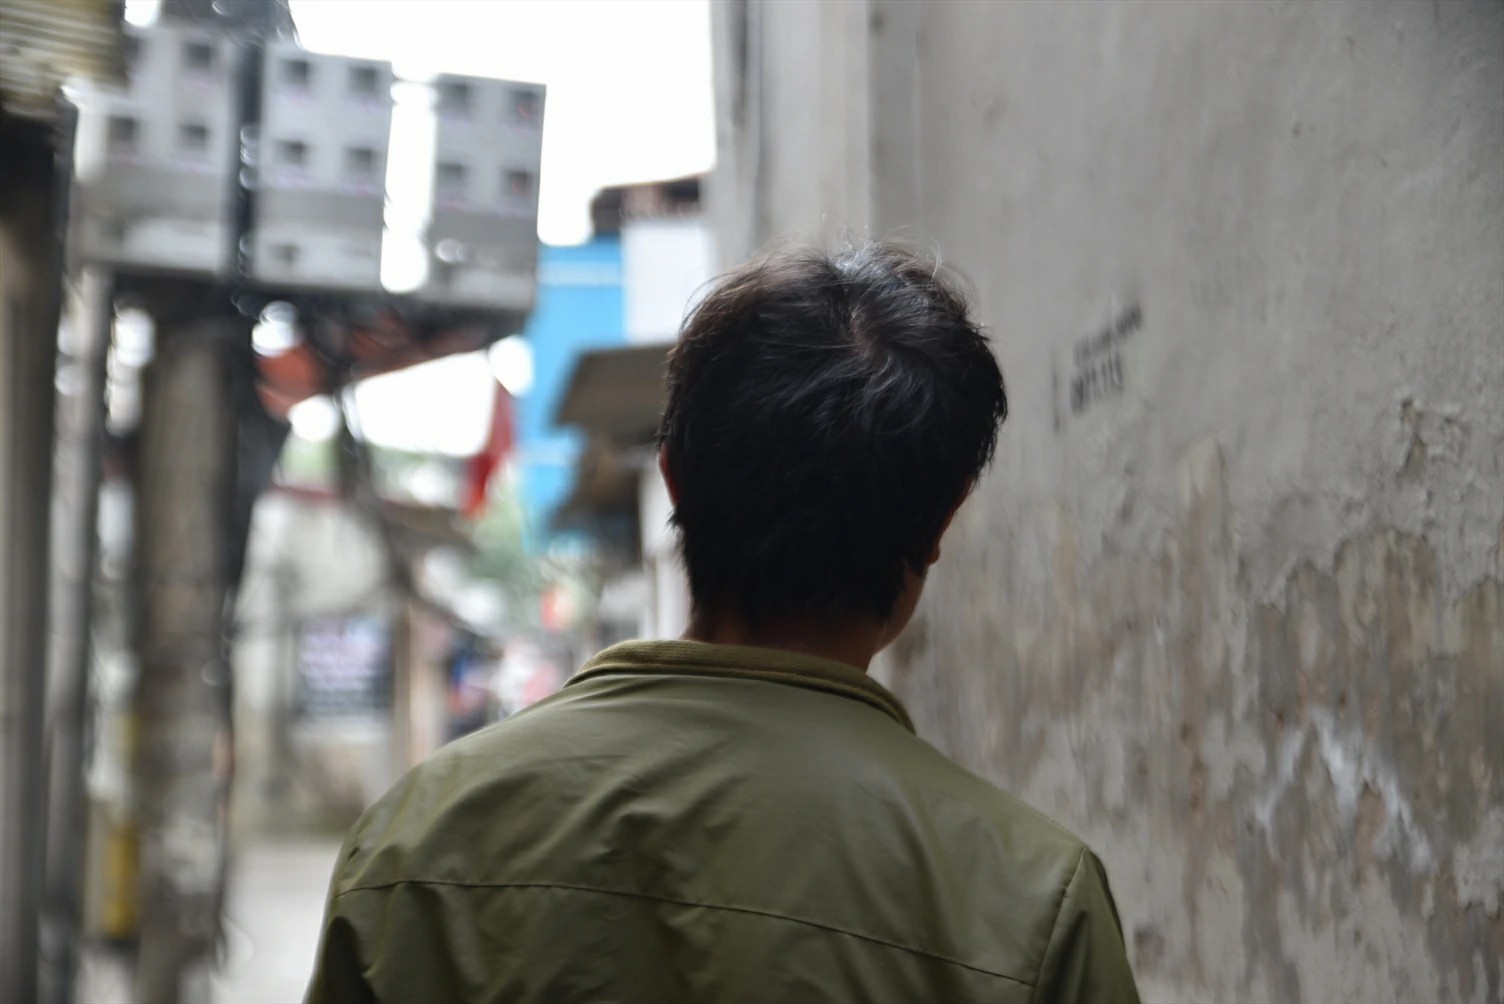 Choj é um cristão vietnamita que tem enfrentado dura perseguição após abandonar as práticas religiosas de sua tribo por amor a Cristo